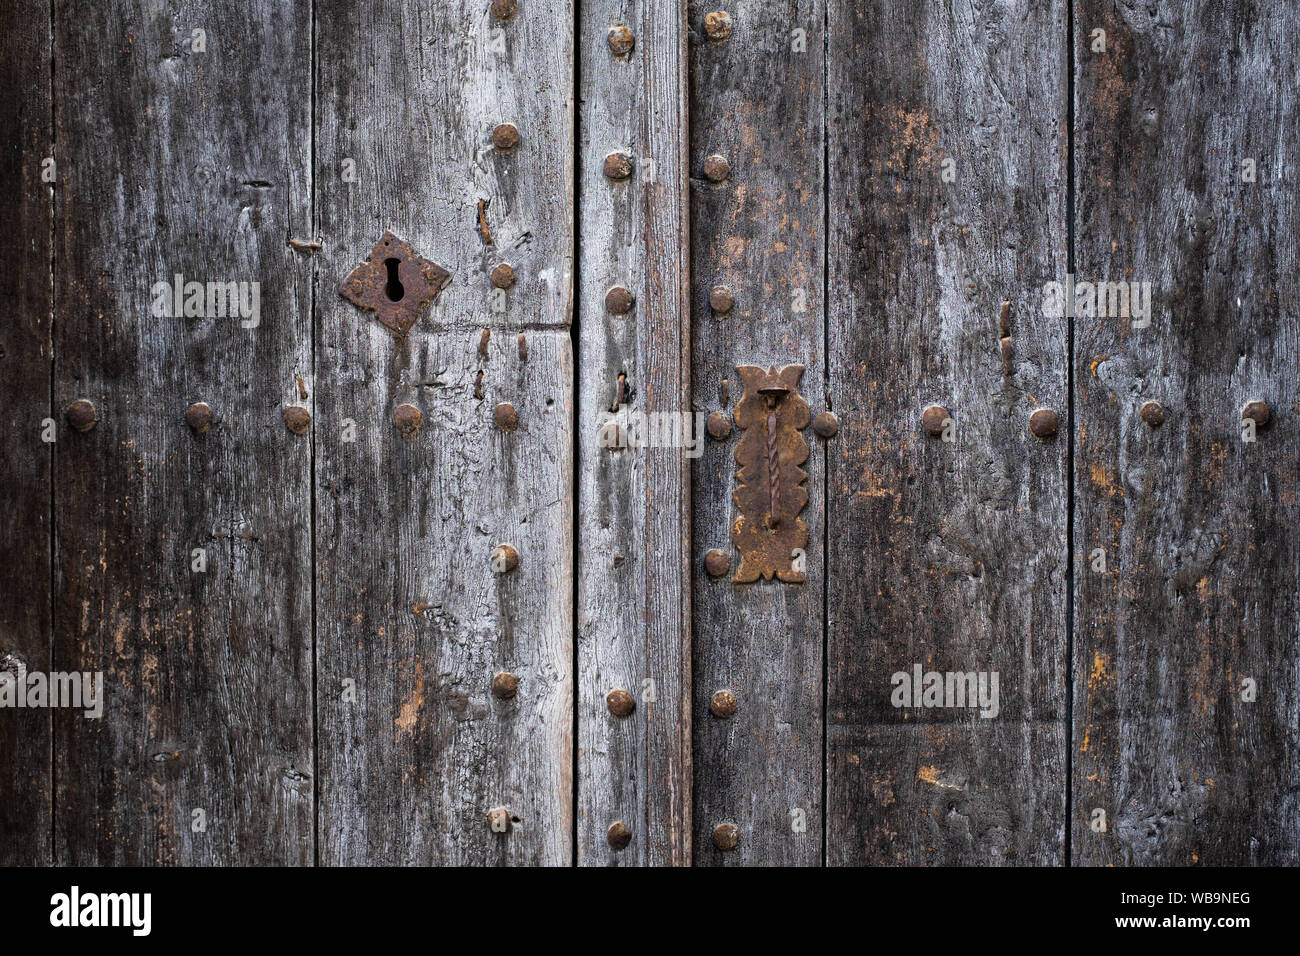 Porte en bois ancien espagnol : poignée rouillée, verrouillage et rivets. La surface rugueuse du bois gris avec motif de fond fissuré. Banque D'Images